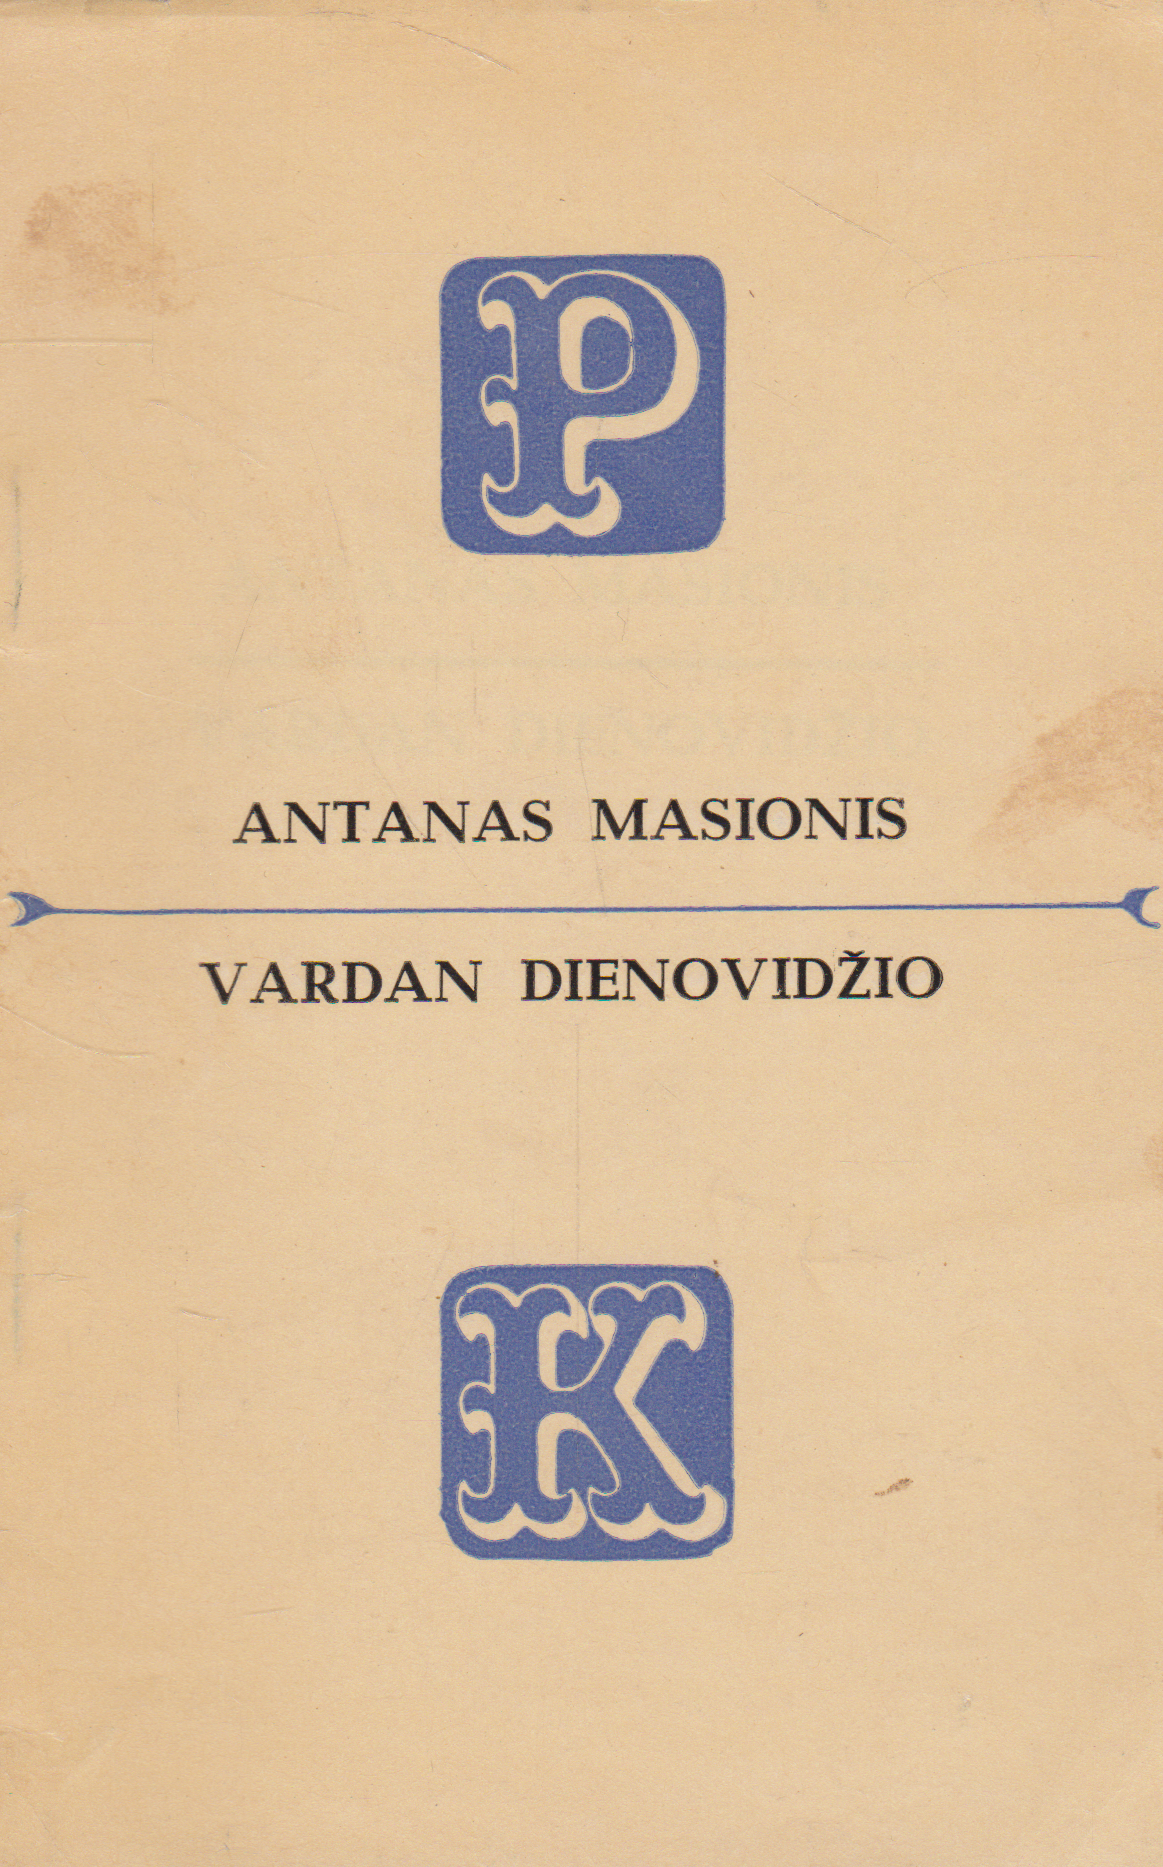 Antanas Masionis - Vardan dienovidžio, 1970 m.